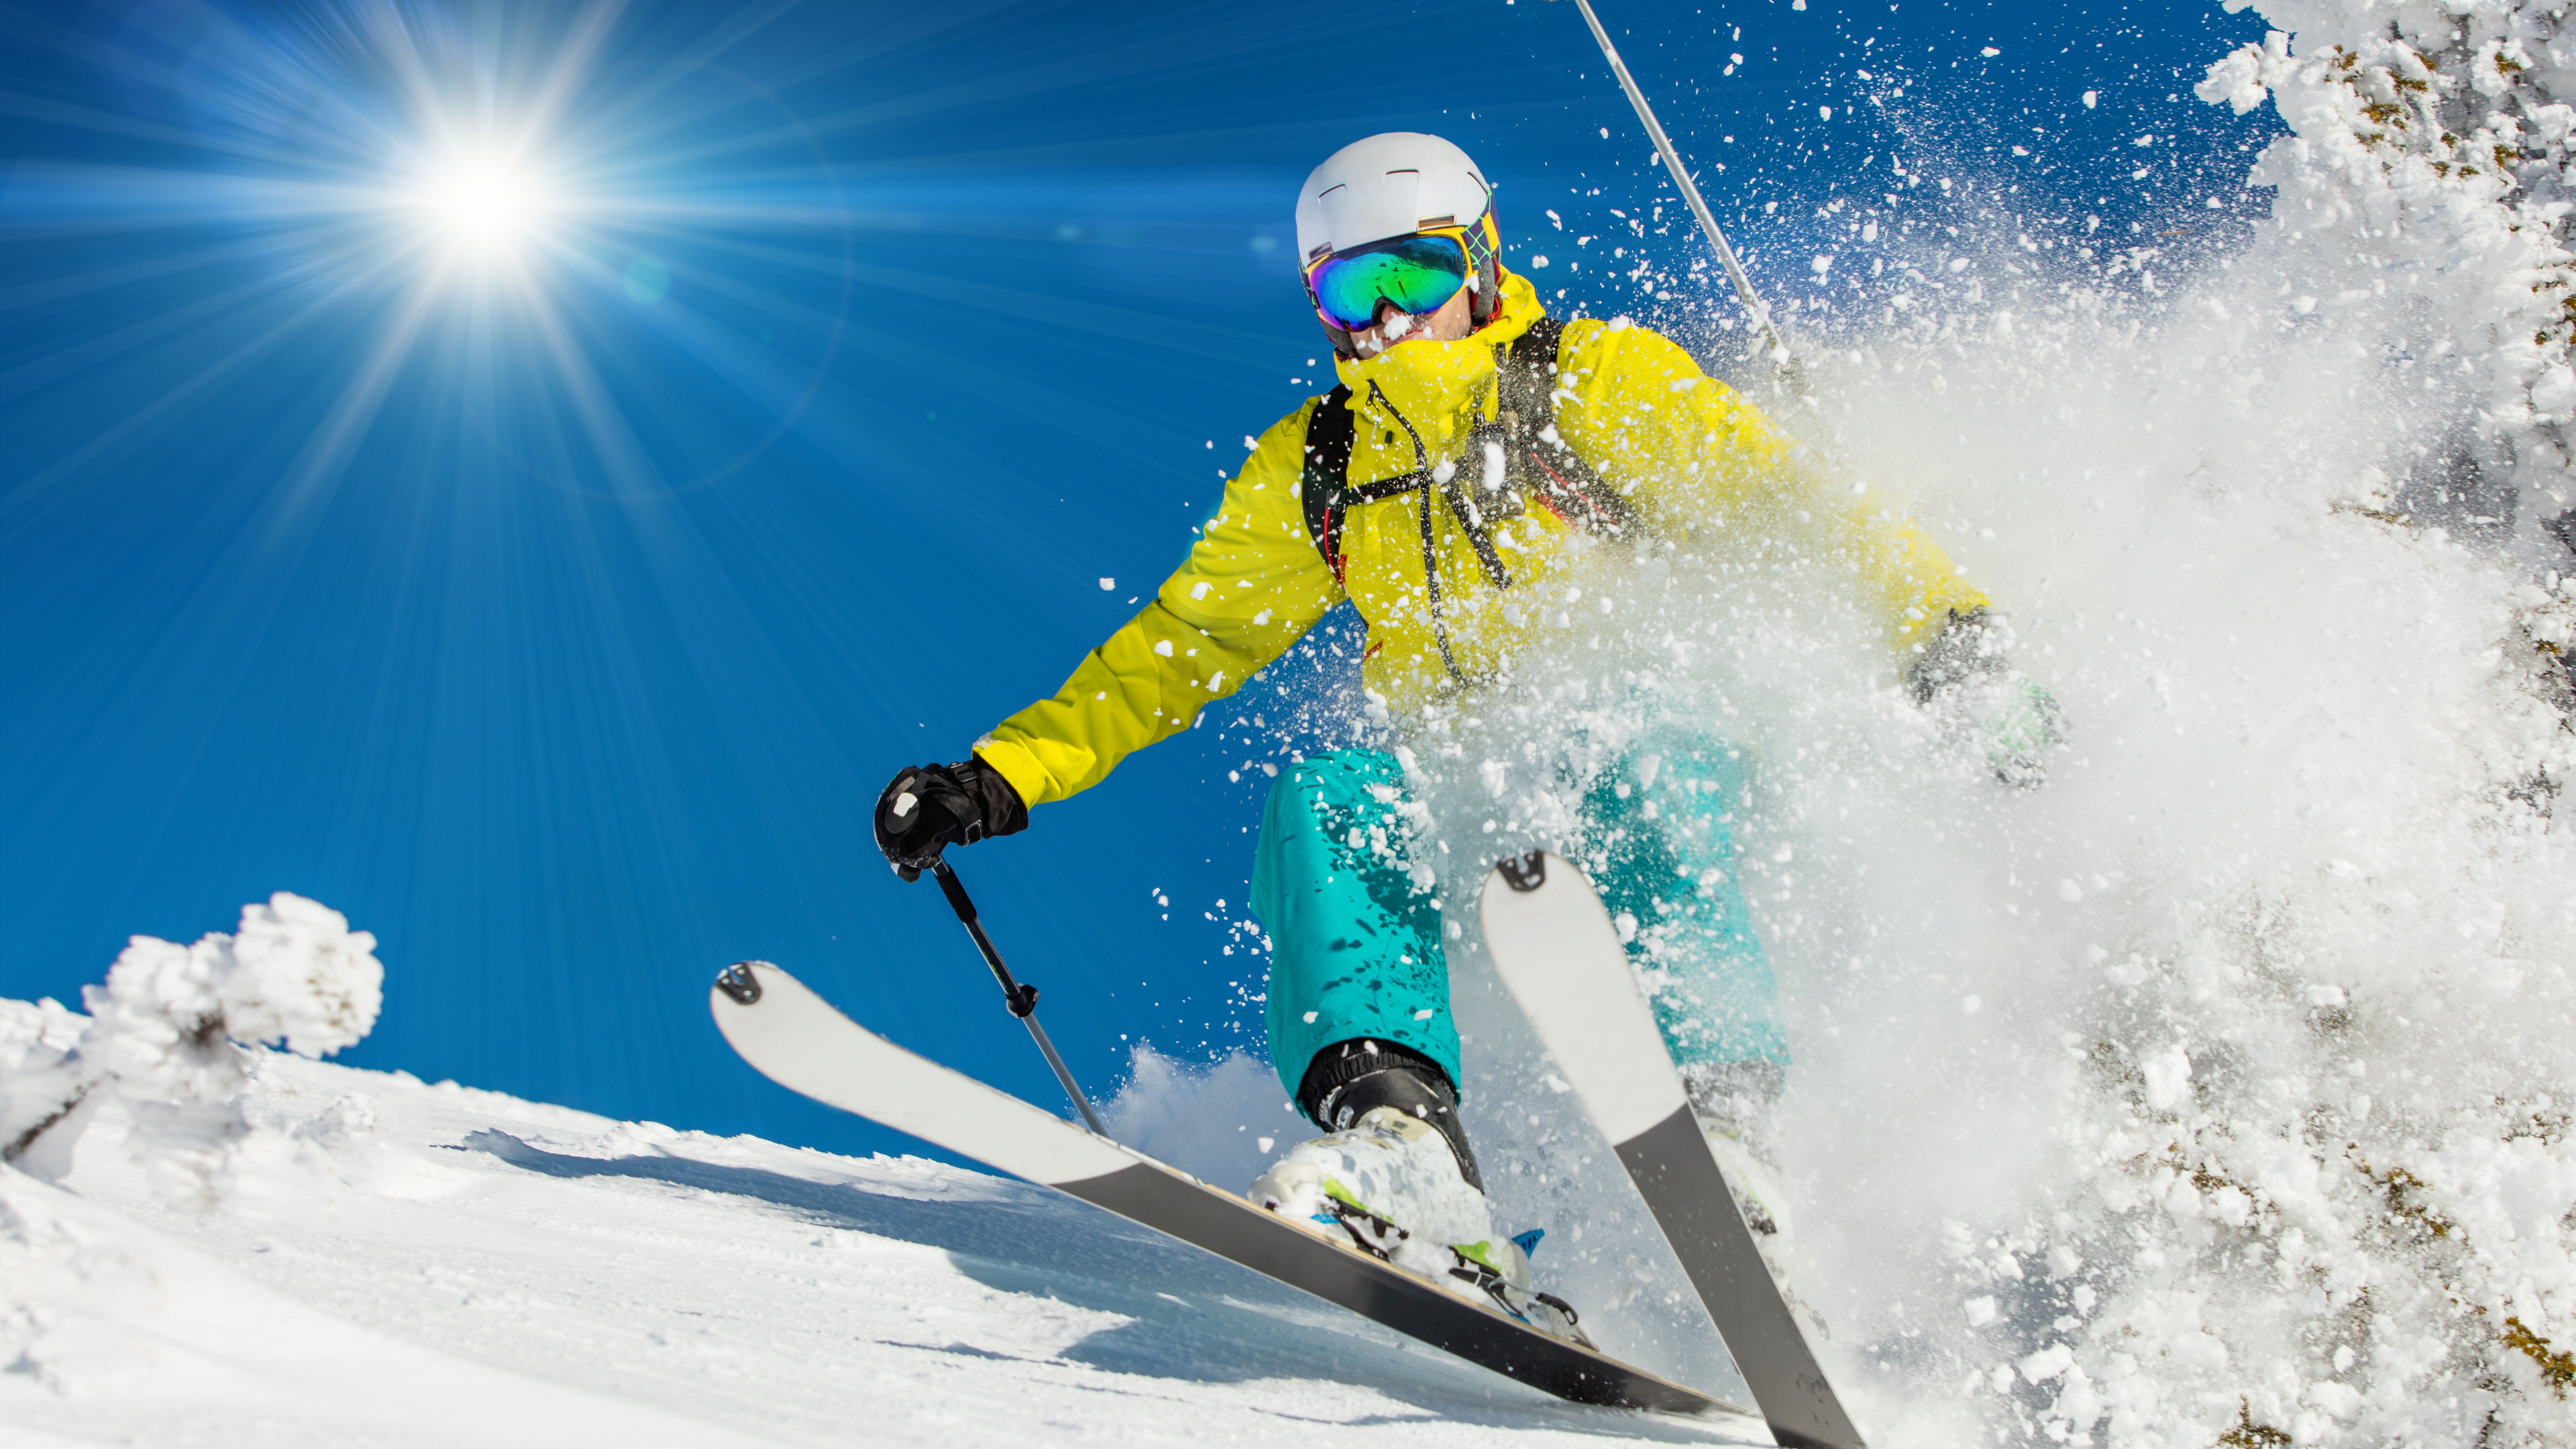 高山滑雪, 滑雪, 极限运动, 自由式滑雪, 滑板滑雪 壁纸 3840x2160 允许